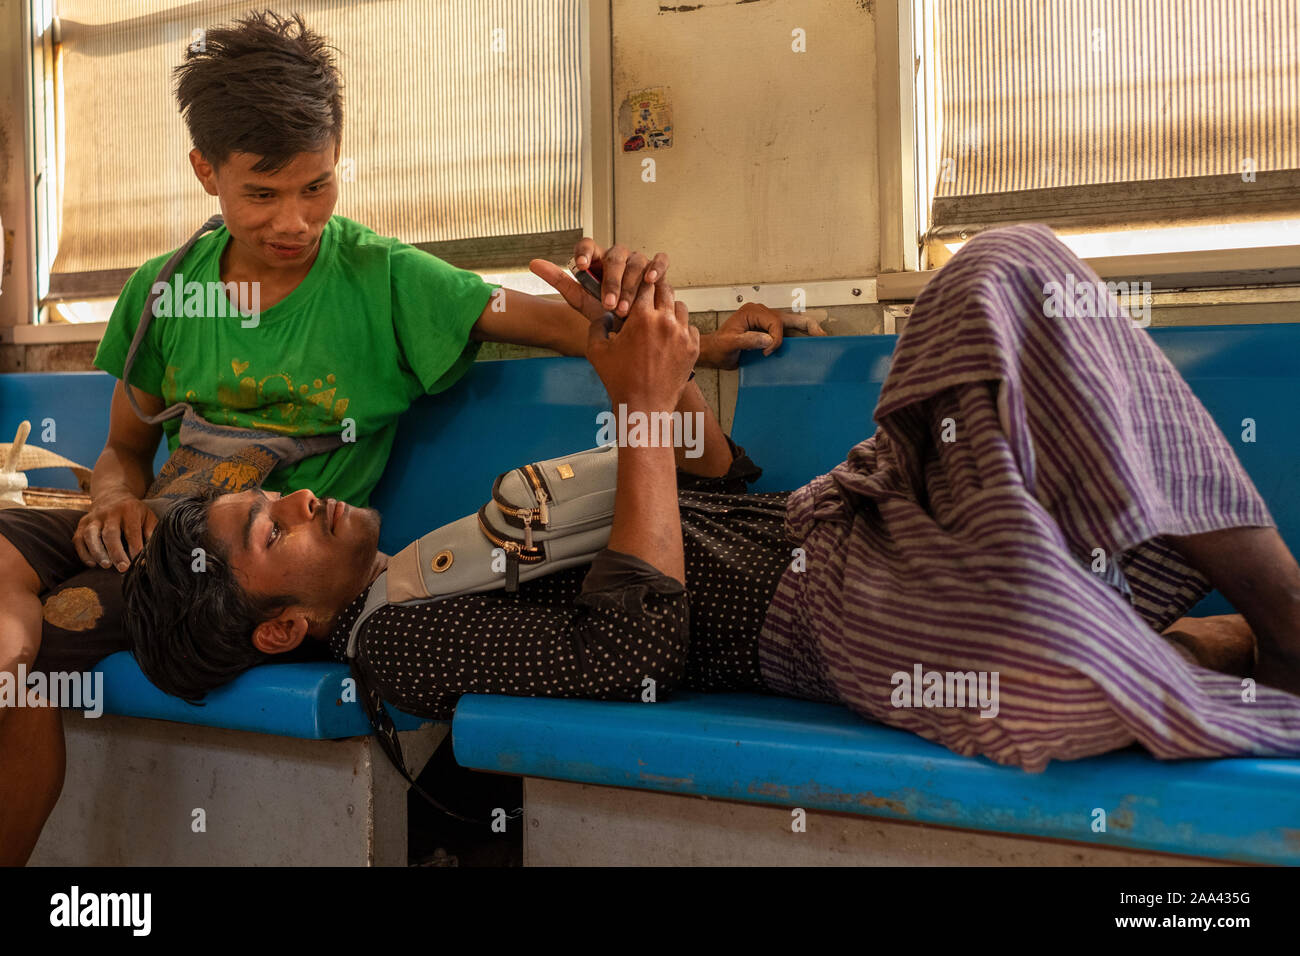 Deux jeunes vendeurs birmans prennent une pause et vérifier un téléphone mobile alors que sur un train local sur la route circulaire autour de Yangon, Myanmar (Birmanie) Banque D'Images